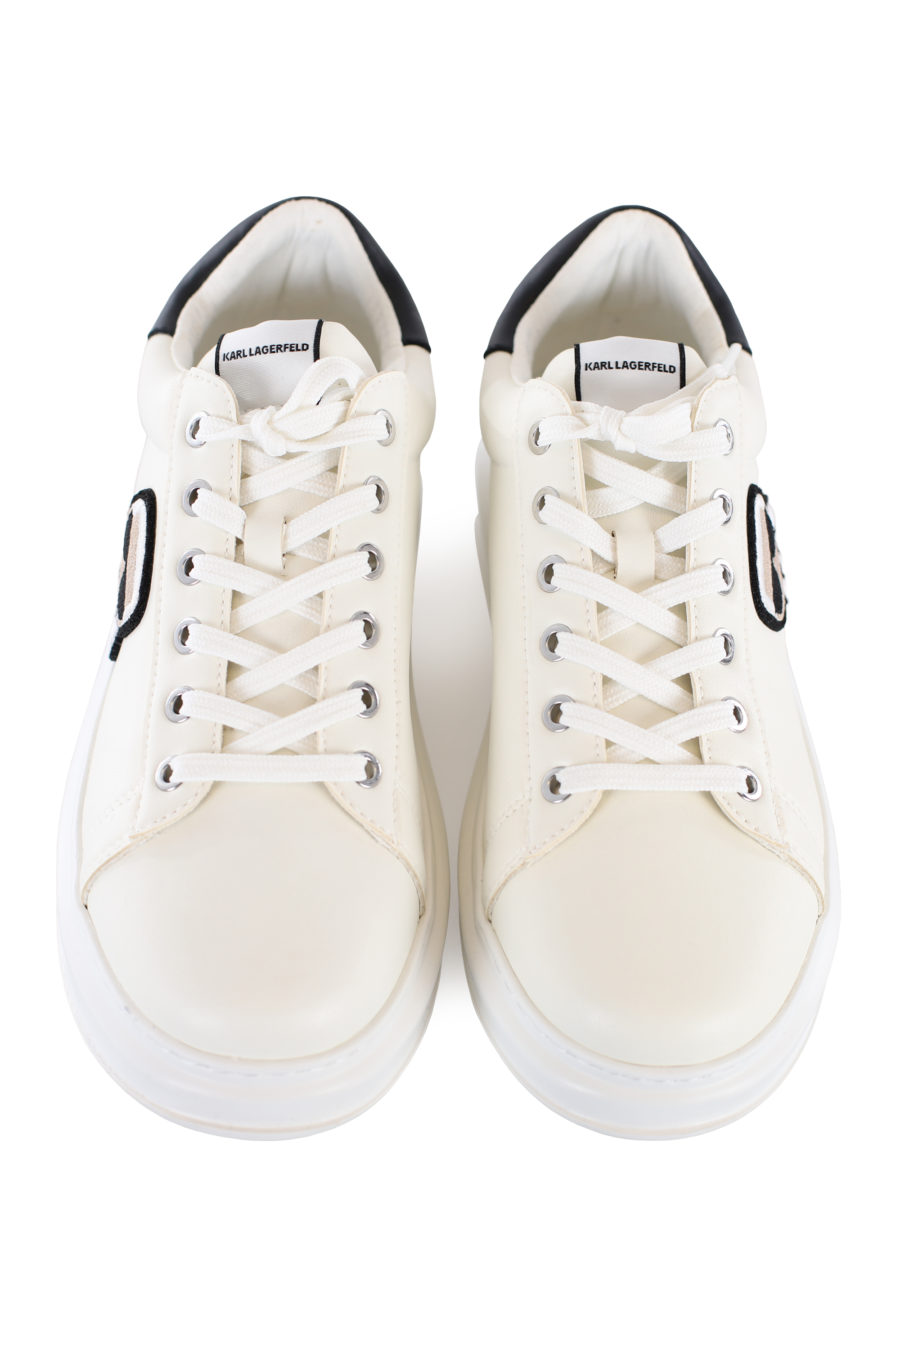 Zapatillas blancas con plataforma y logo en parche - IMG 1665